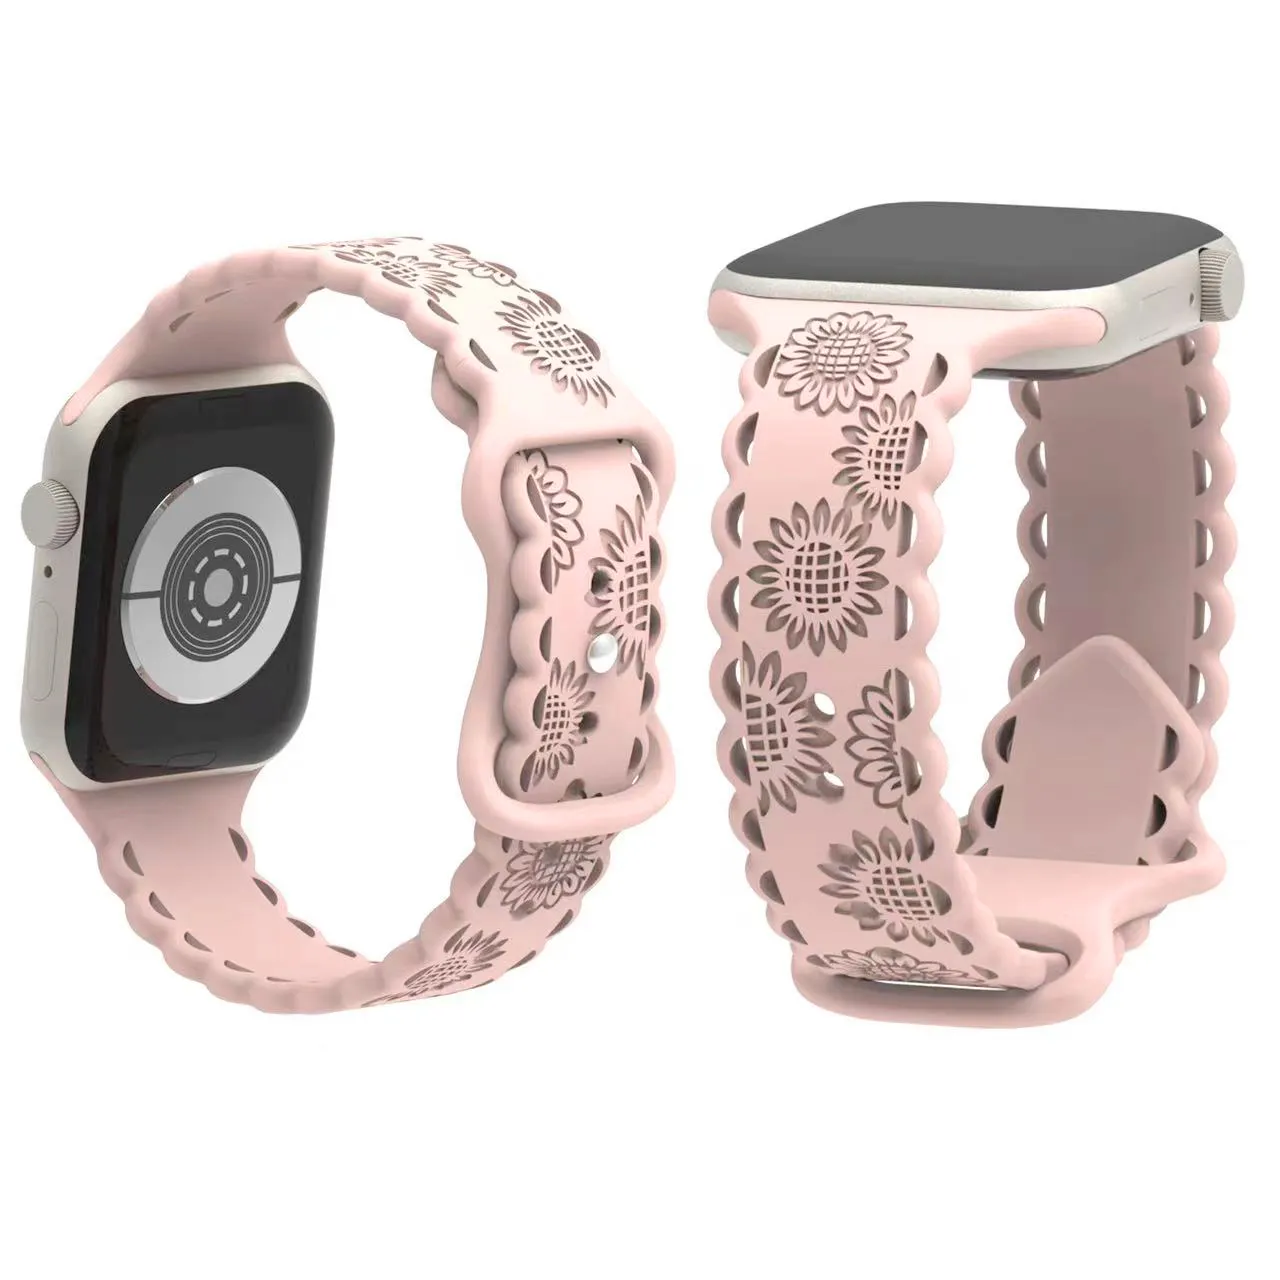 Nouveau design dentelle de tournesol évidée Floral caoutchouc sport bracelet de montre en Silicone iWatch bracelets pour montre intelligente